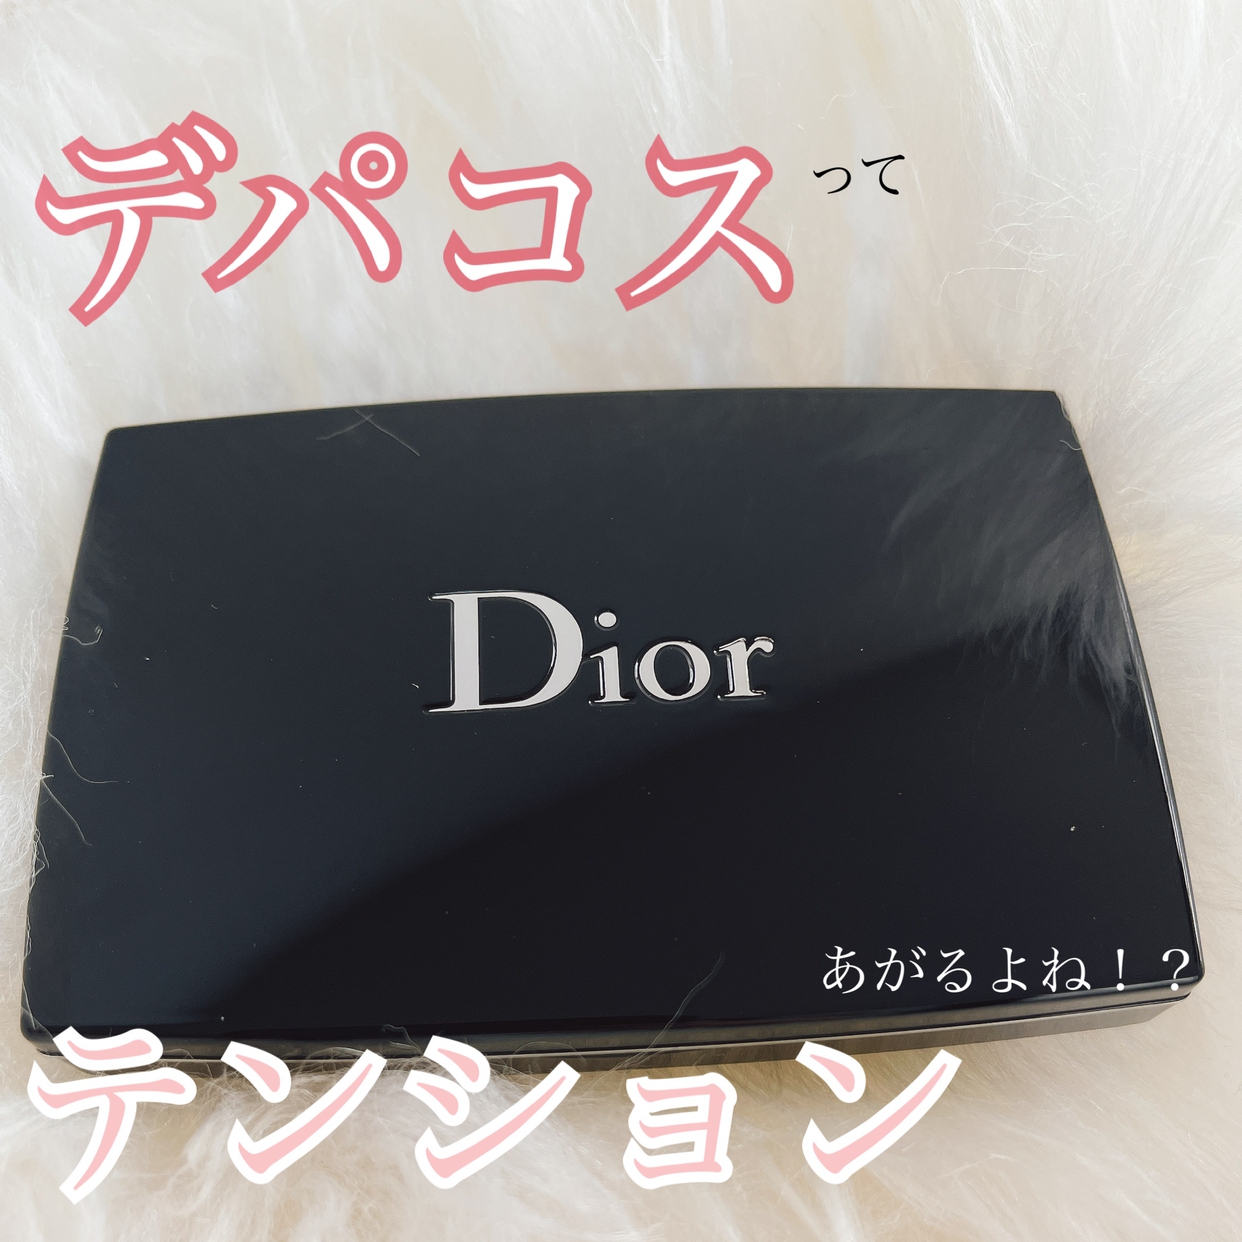 Dior(ディオール) スキン フォーエヴァー コンパクト エクストレム コントロールの良い点・メリットに関するcanさんの口コミ画像1